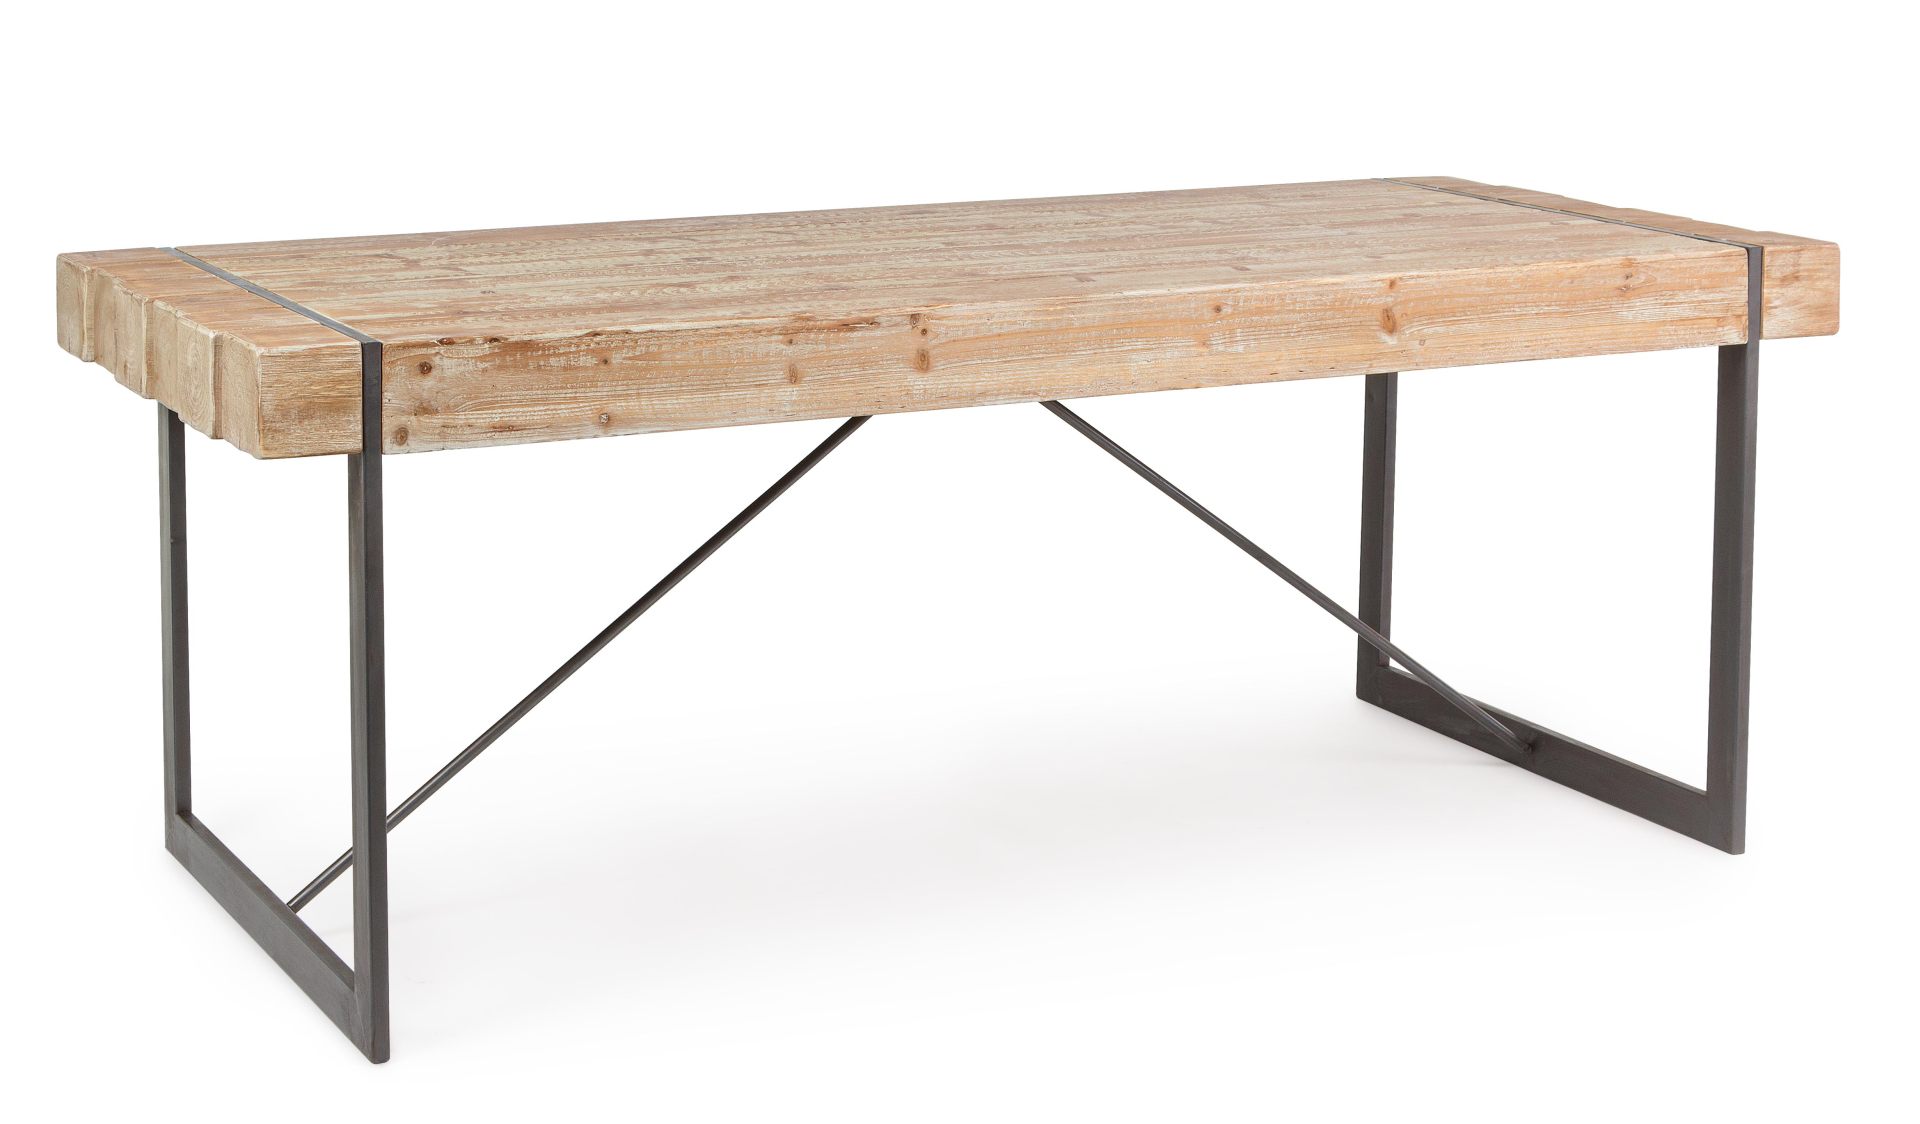 Der Esstisch Gerrett überzeugt mit seinem moderndem Design. Gefertigt wurde er aus Tannenholz, welches einen natürlichen Farbton besitzt. Das Gestell des Tisches ist aus Metall und ist in eine schwarze Farbe. Der Tisch besitzt eine Breite von 200 cm.